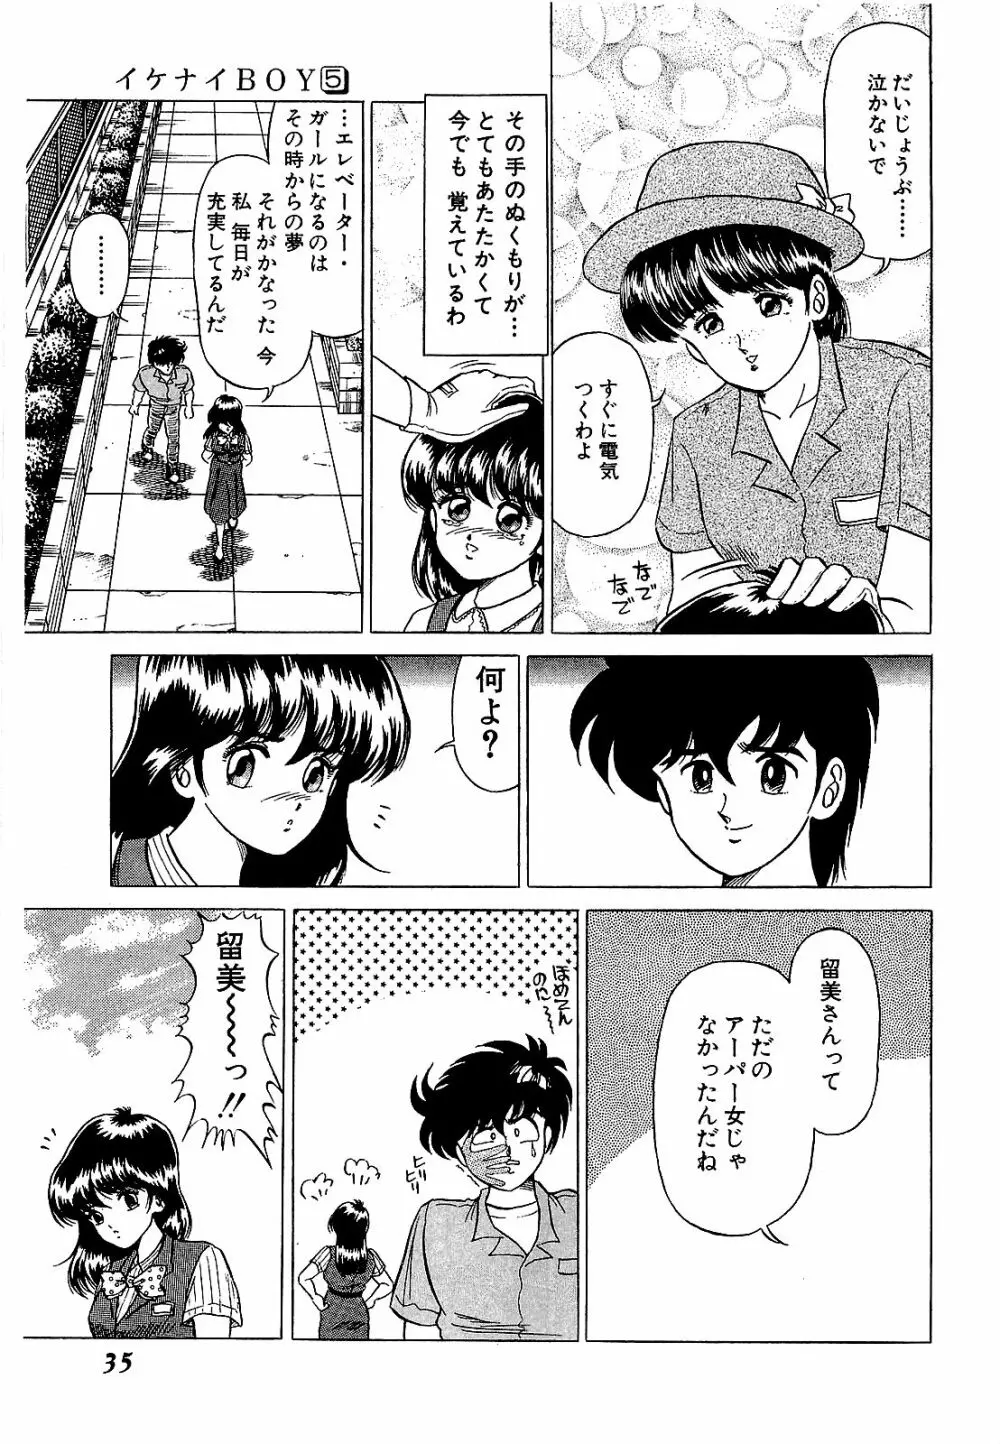 Ikenai Boy 05 38ページ